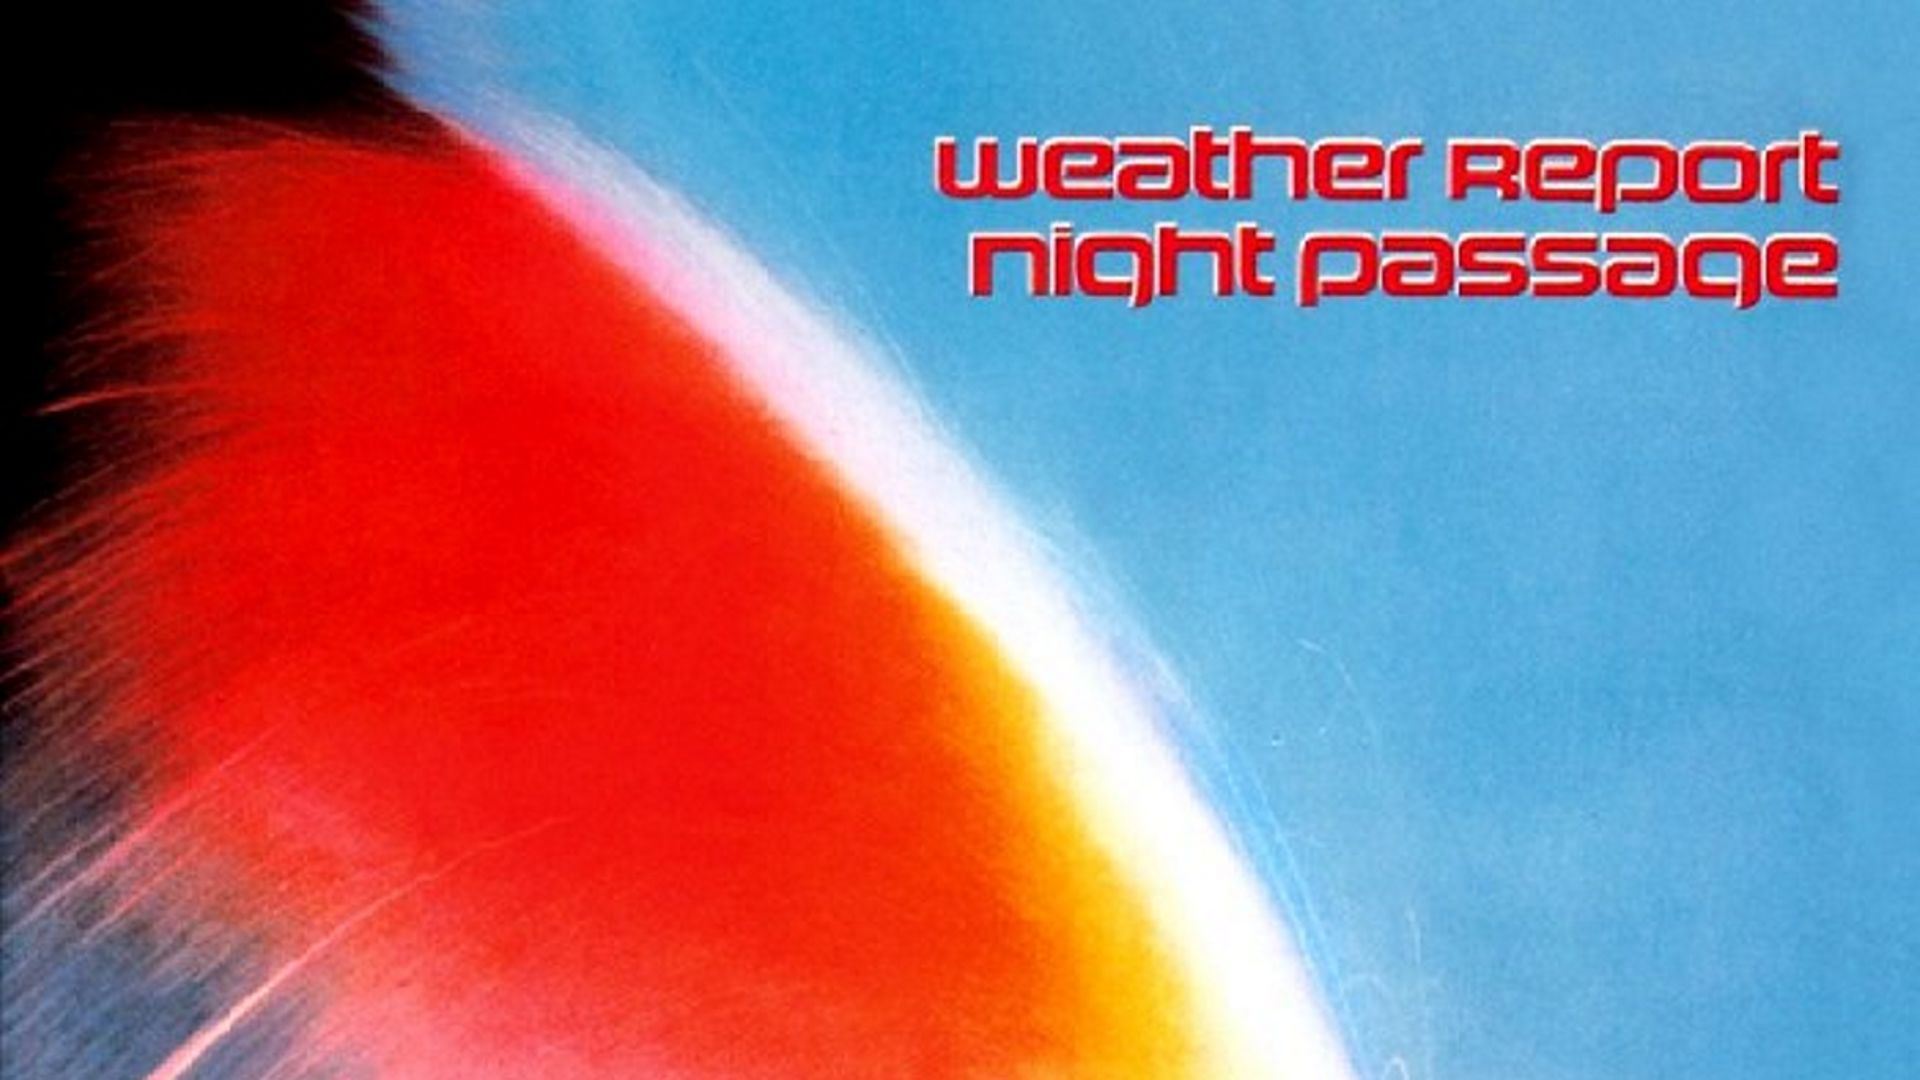 Il y a 40 ans s'enregistrait "Night Passage" de Weather Report